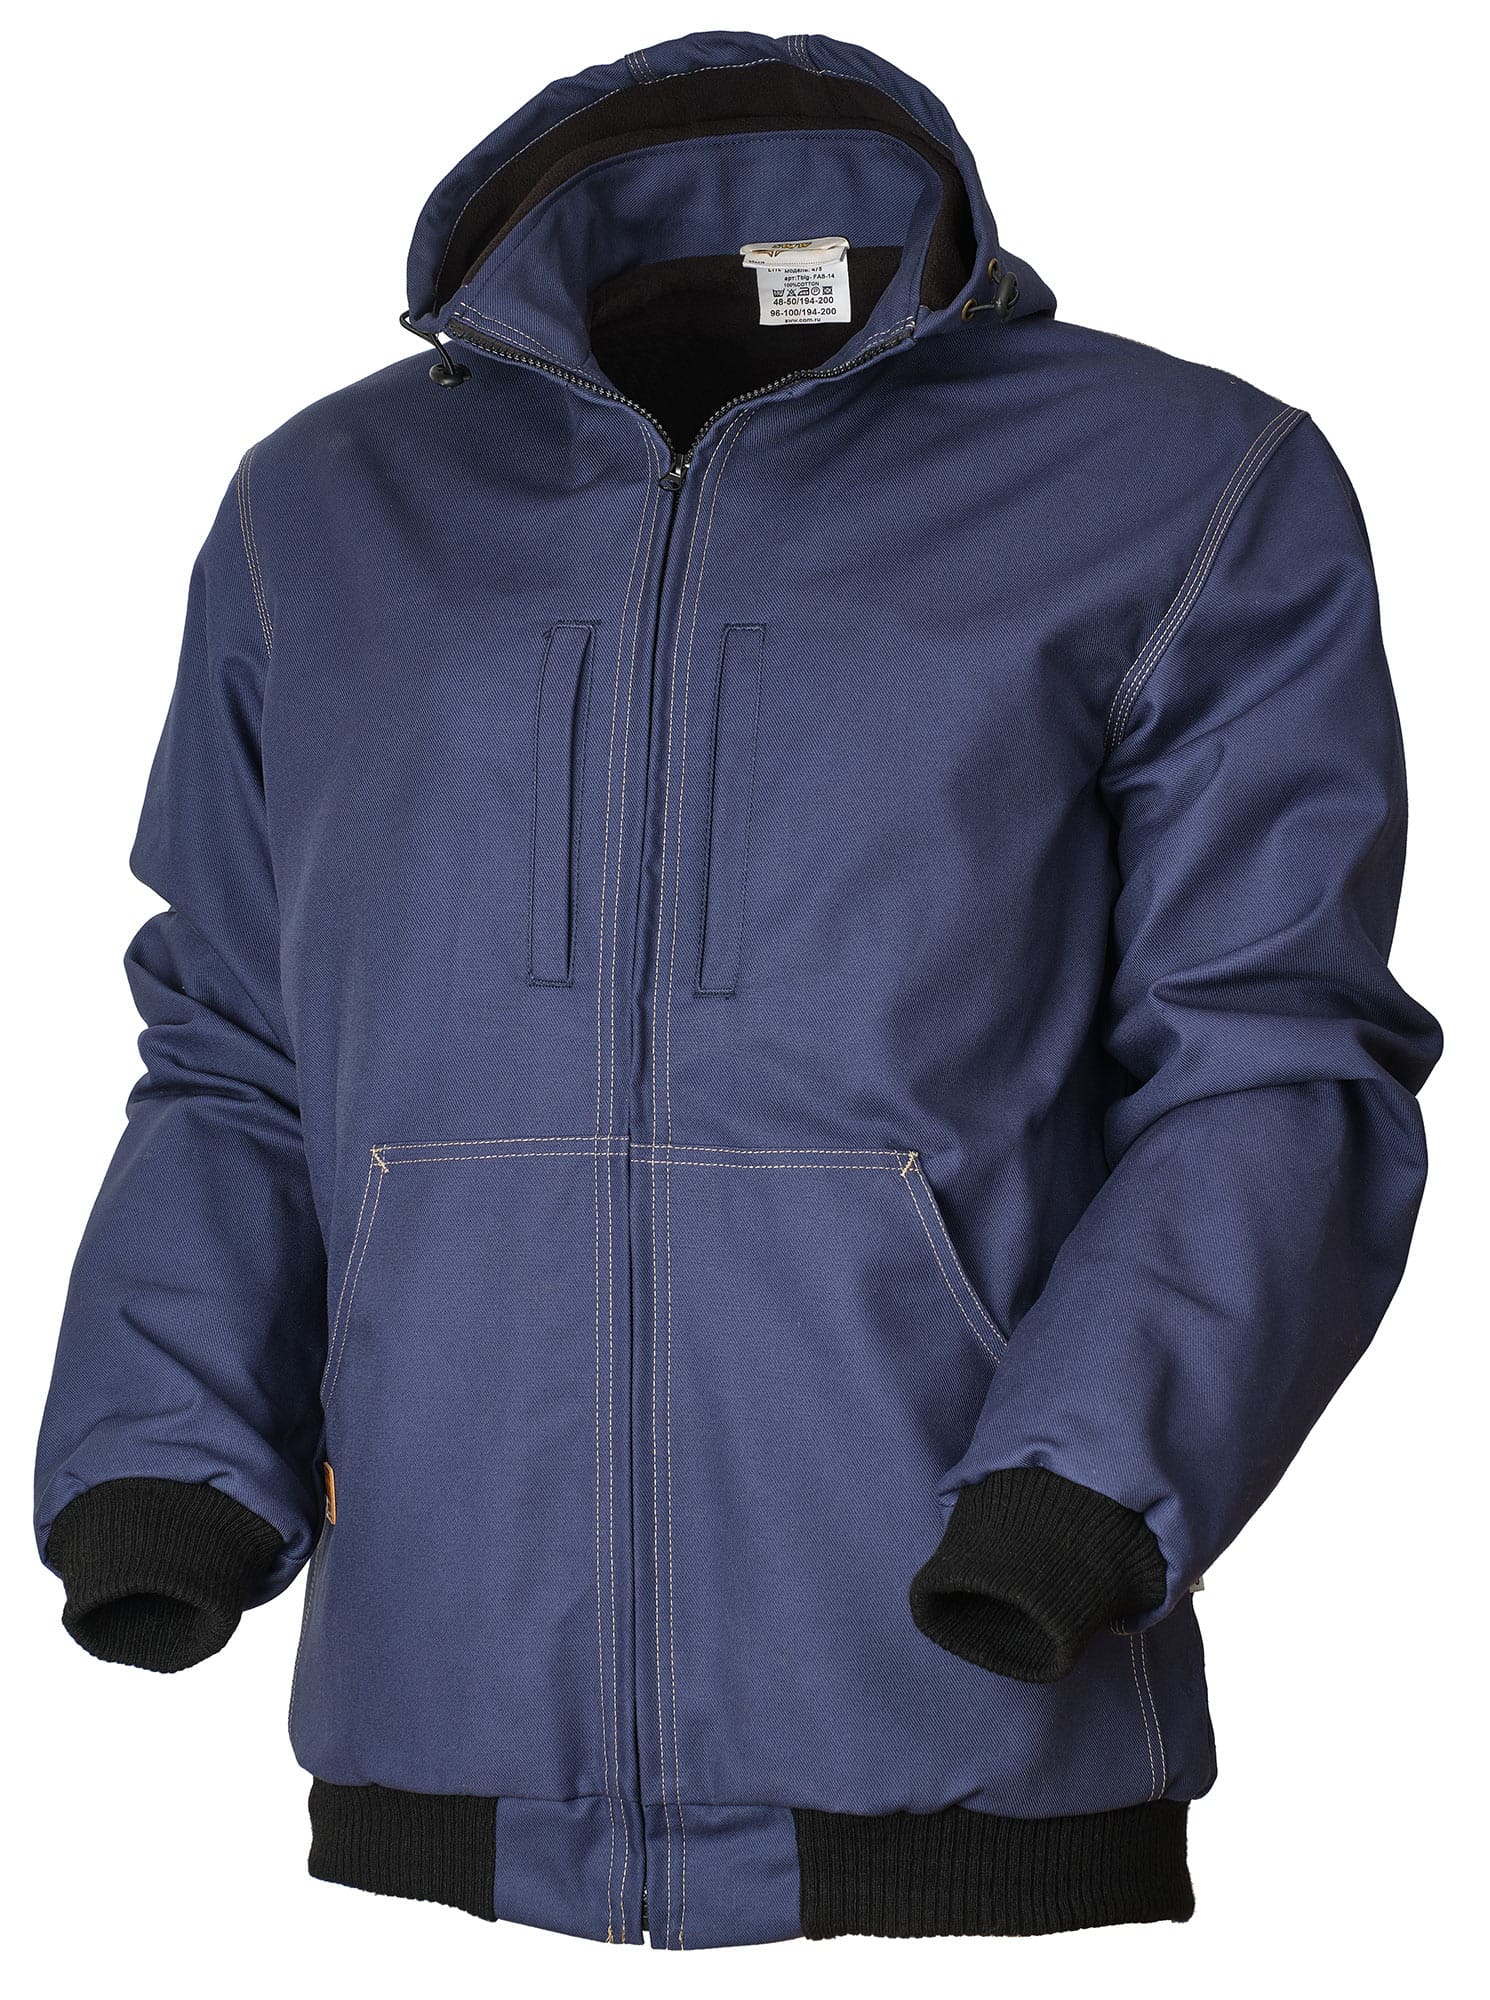 Куртка 475TBIG-FAS-14 SWW купить оптом и в розницу в интернет-магазине tis-tex.ru — 1